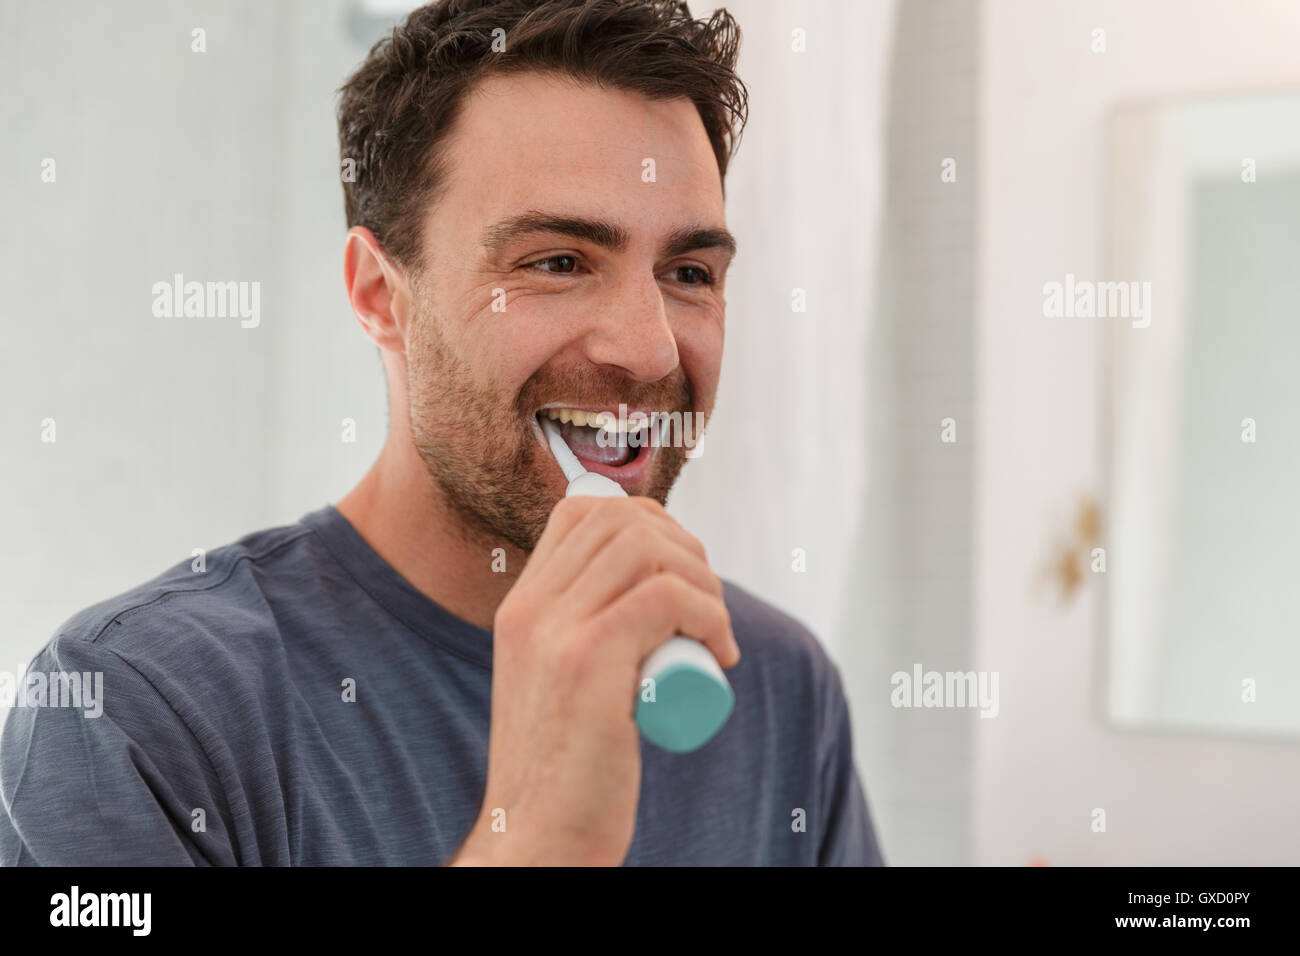 Man brushing teeth smiling Stock Photo